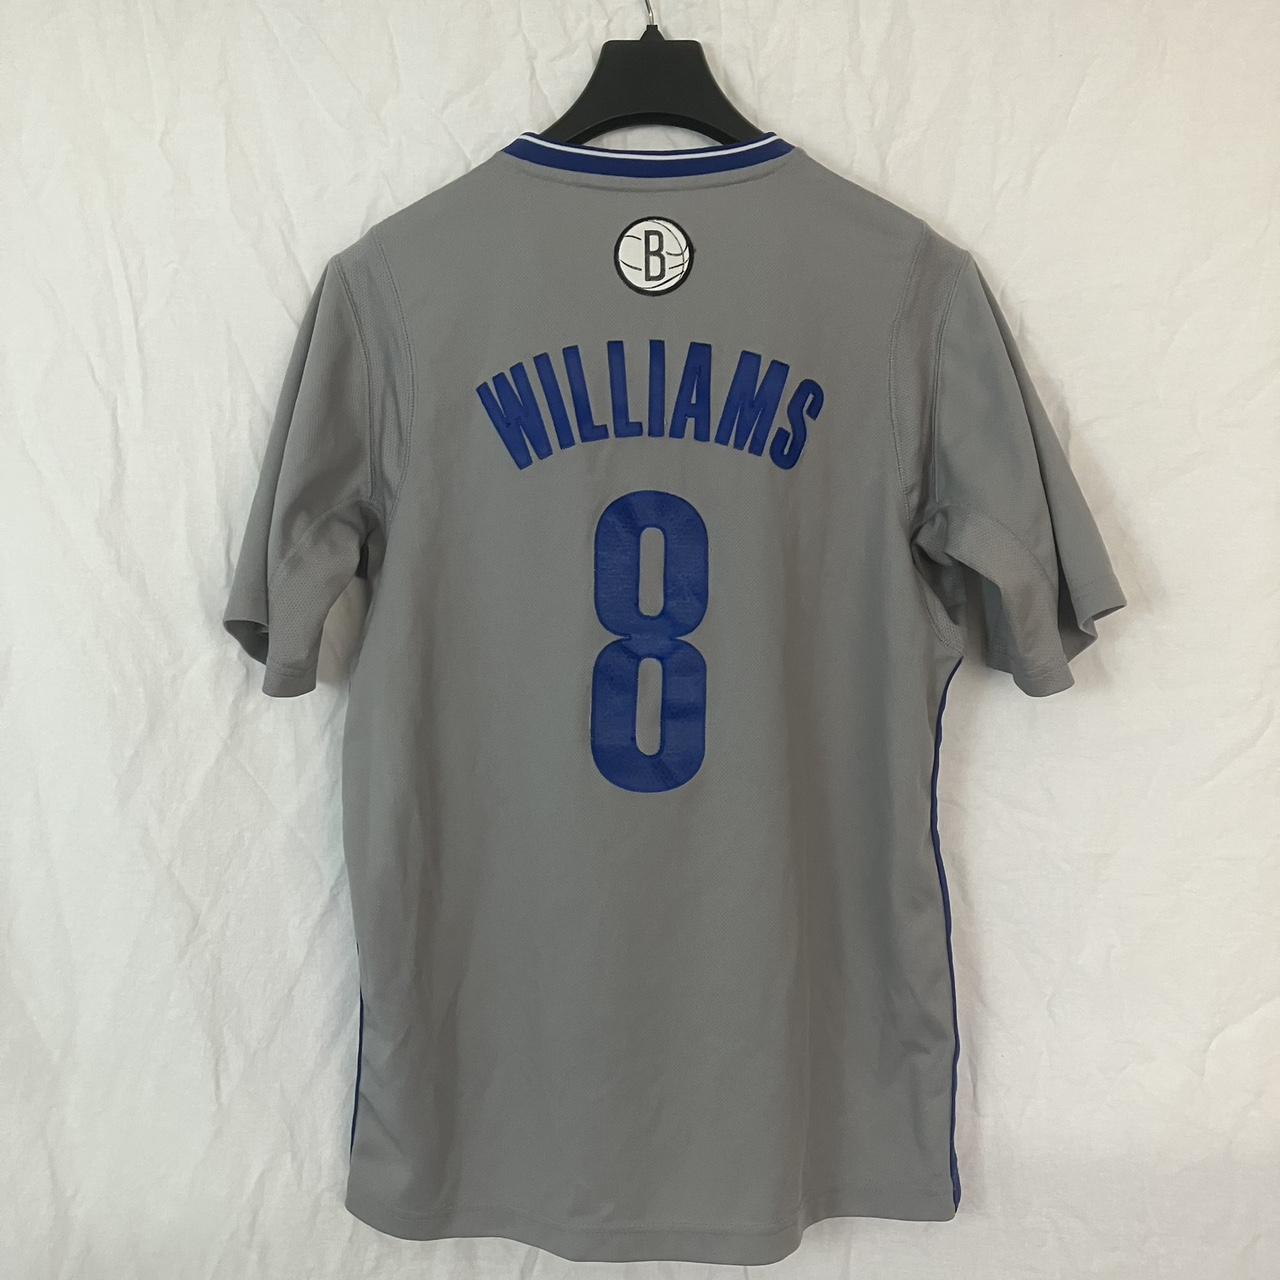 Brooklyn Nets 2014-2015 alternate uniform, kodrinsky